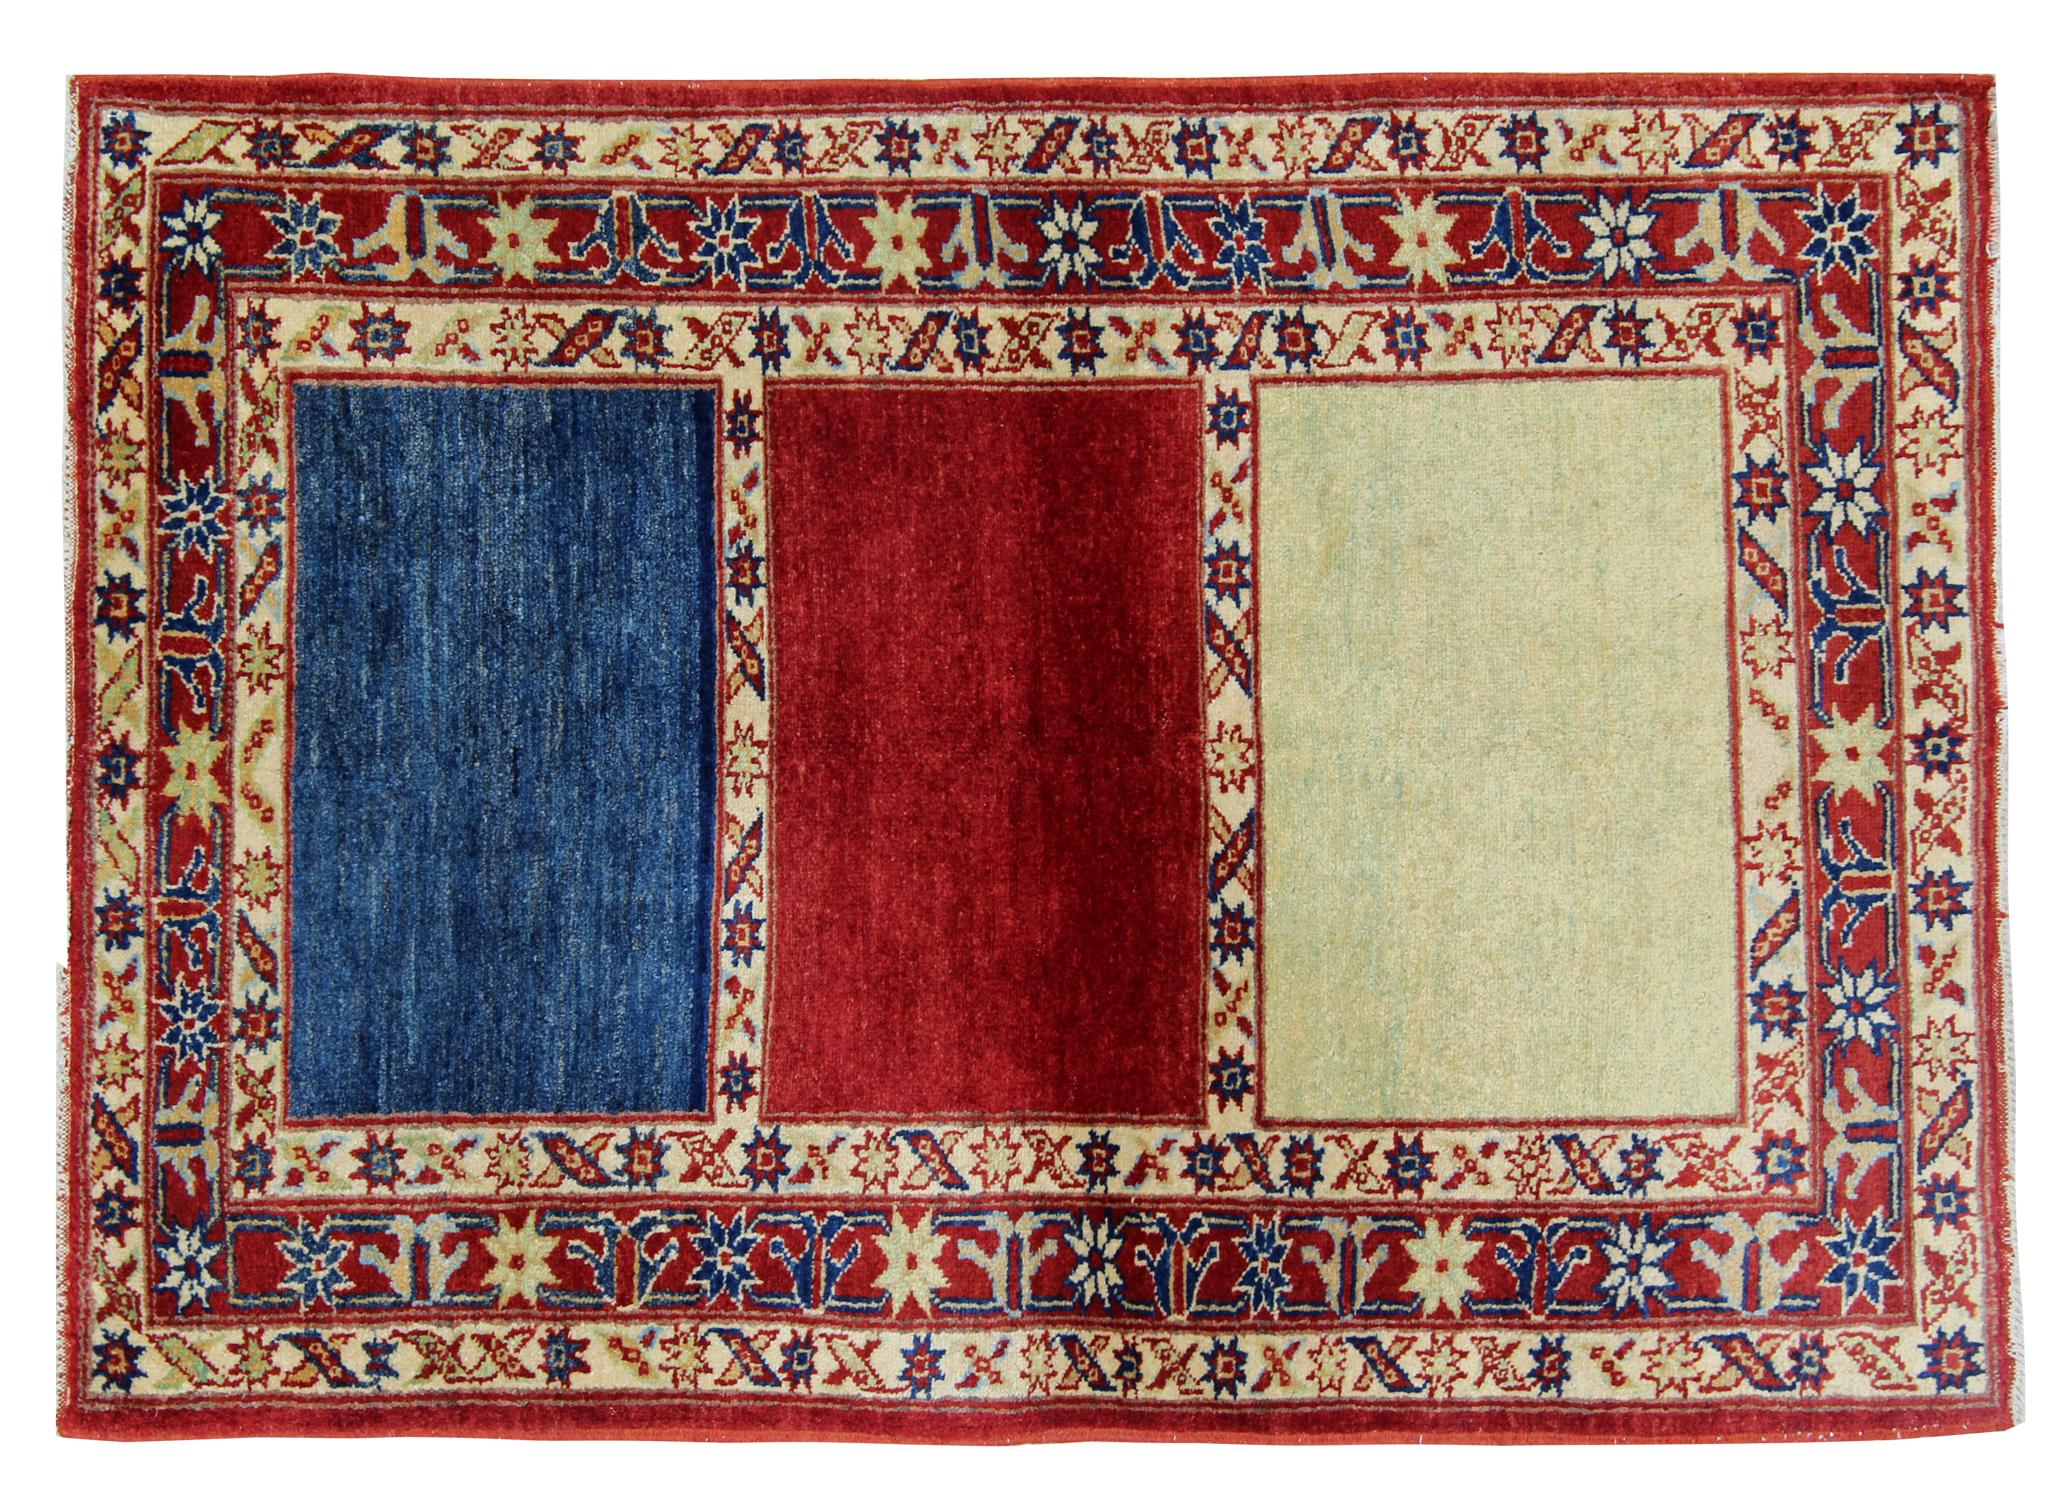 Diese handgefertigten Teppiche sind handgewebte Teppiche in auffälligen Farbkombinationen. Dieser gestreifte Teppich ist in den Farben Rot, Blau und Gelb gehalten. Das Muster an der Bordüre des Teppichs ist von kaukasischen Mustern beeinflusst.